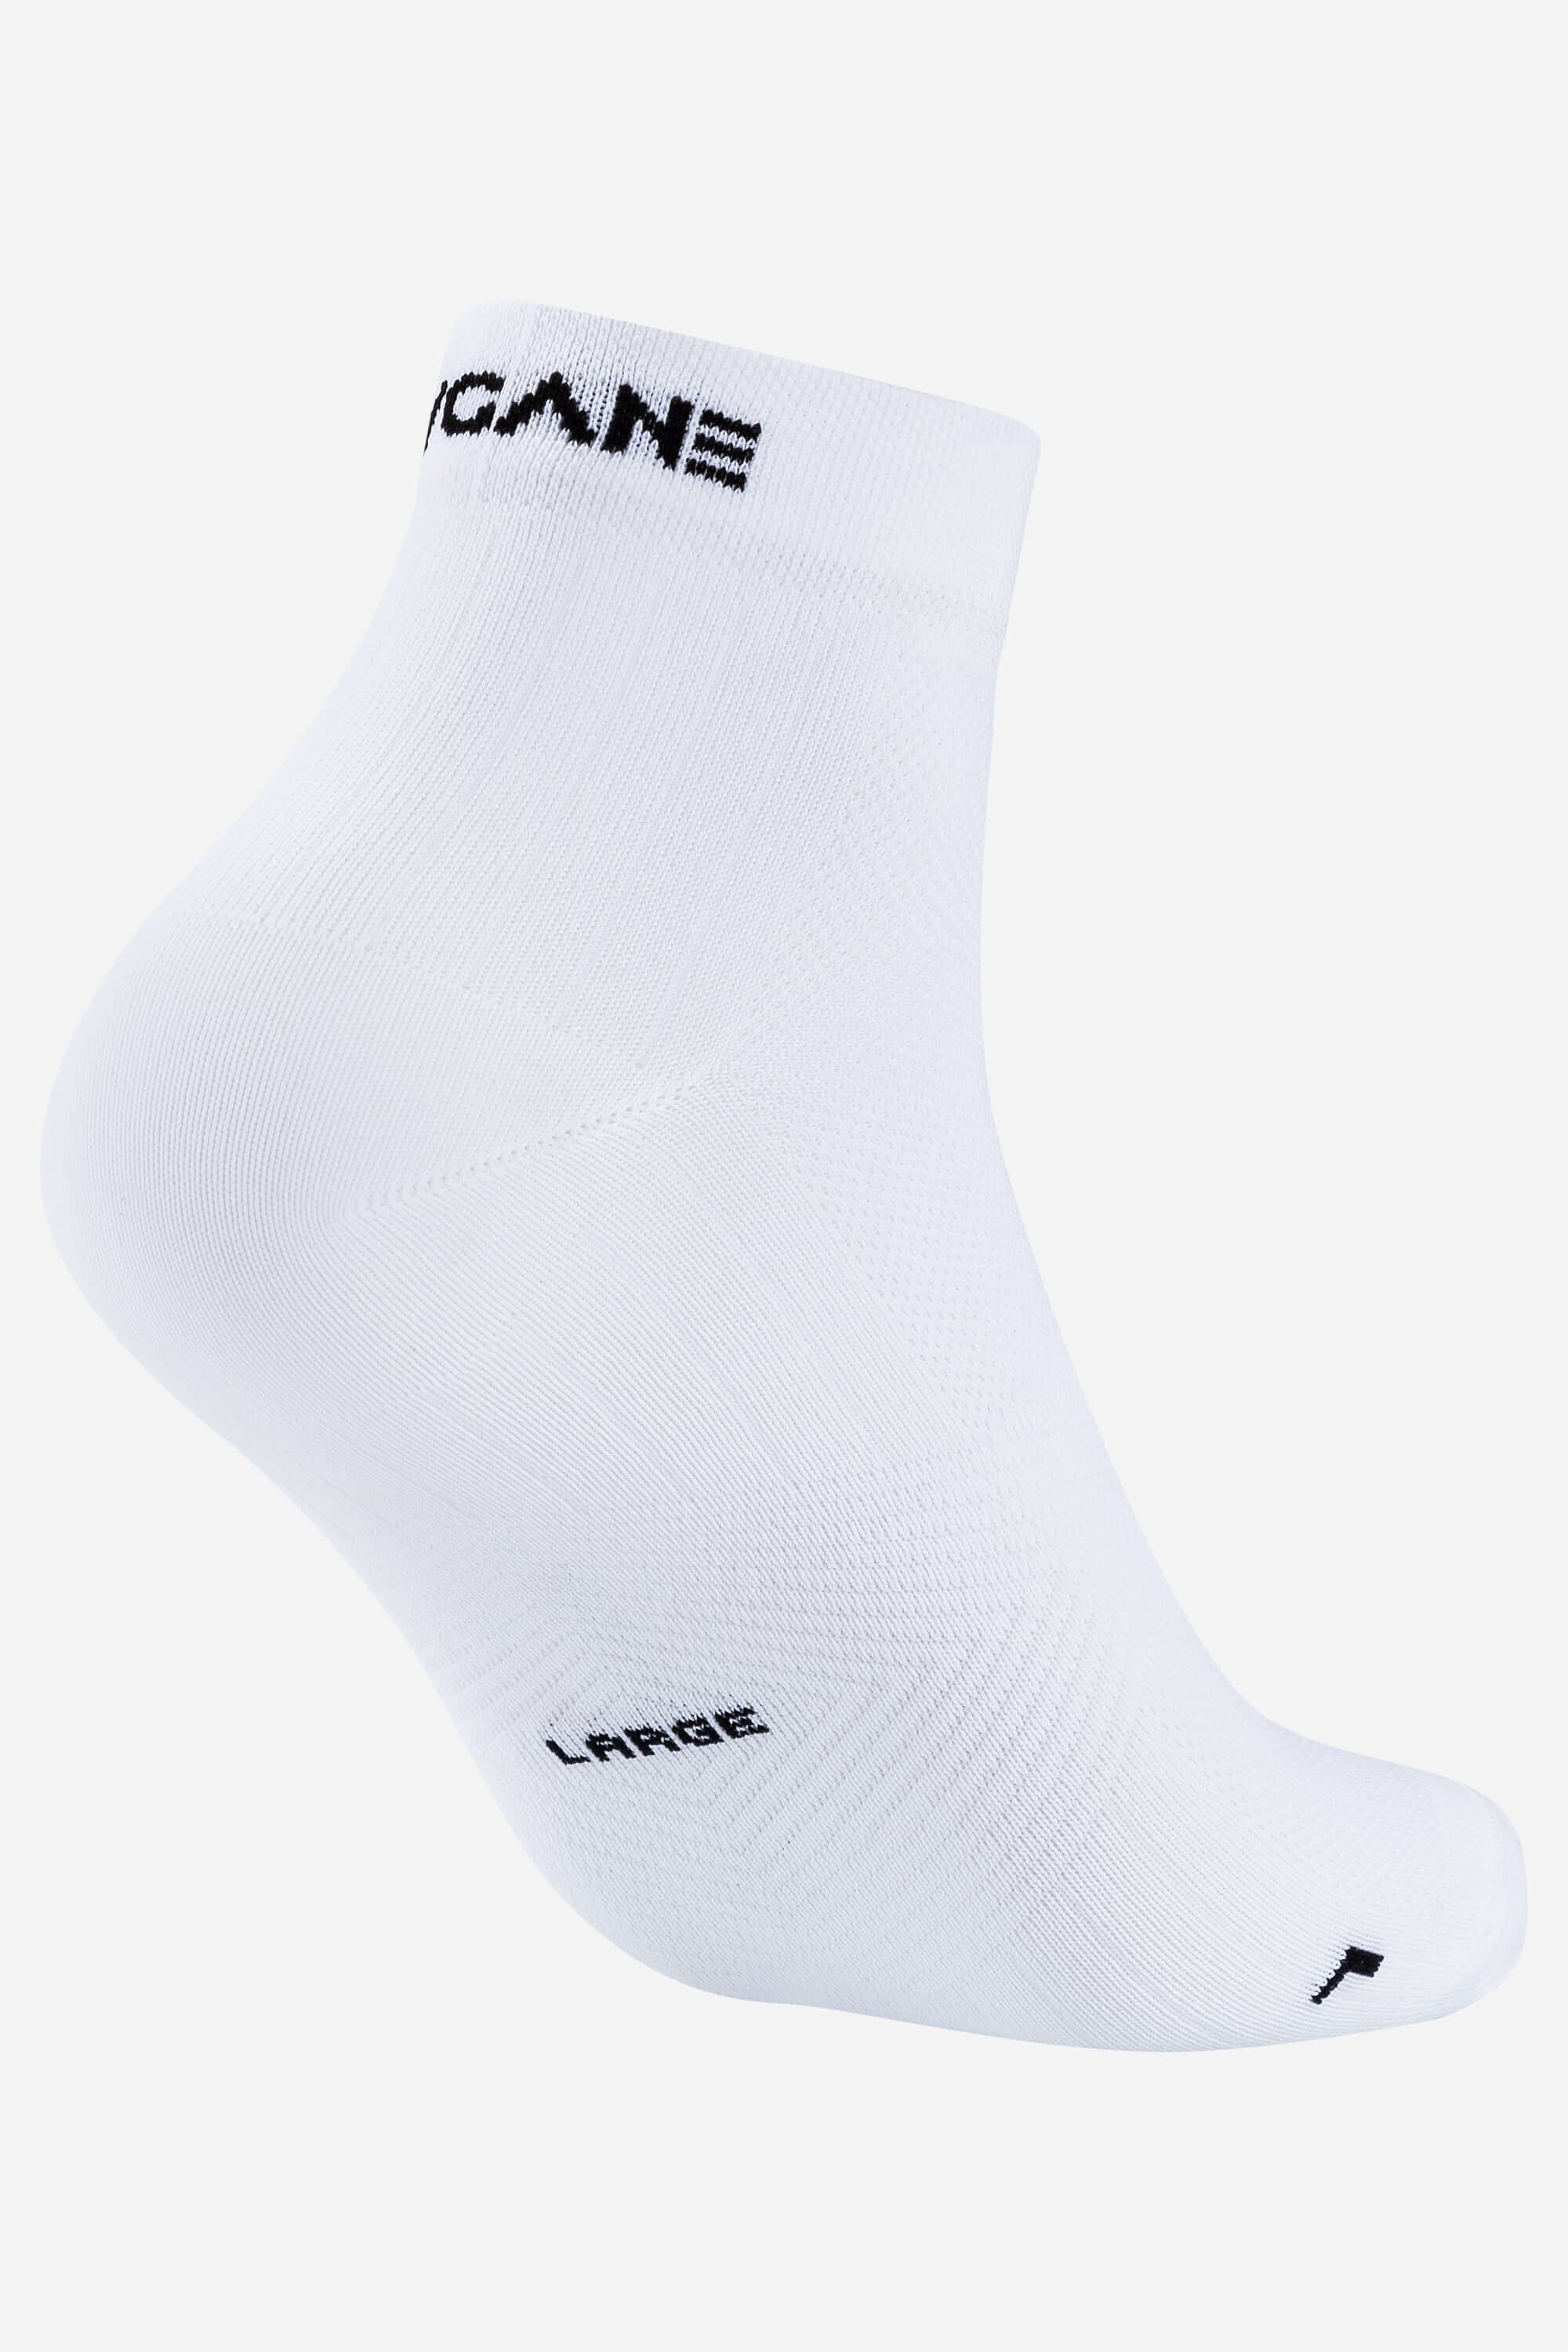 White training socks with AYCANE logo